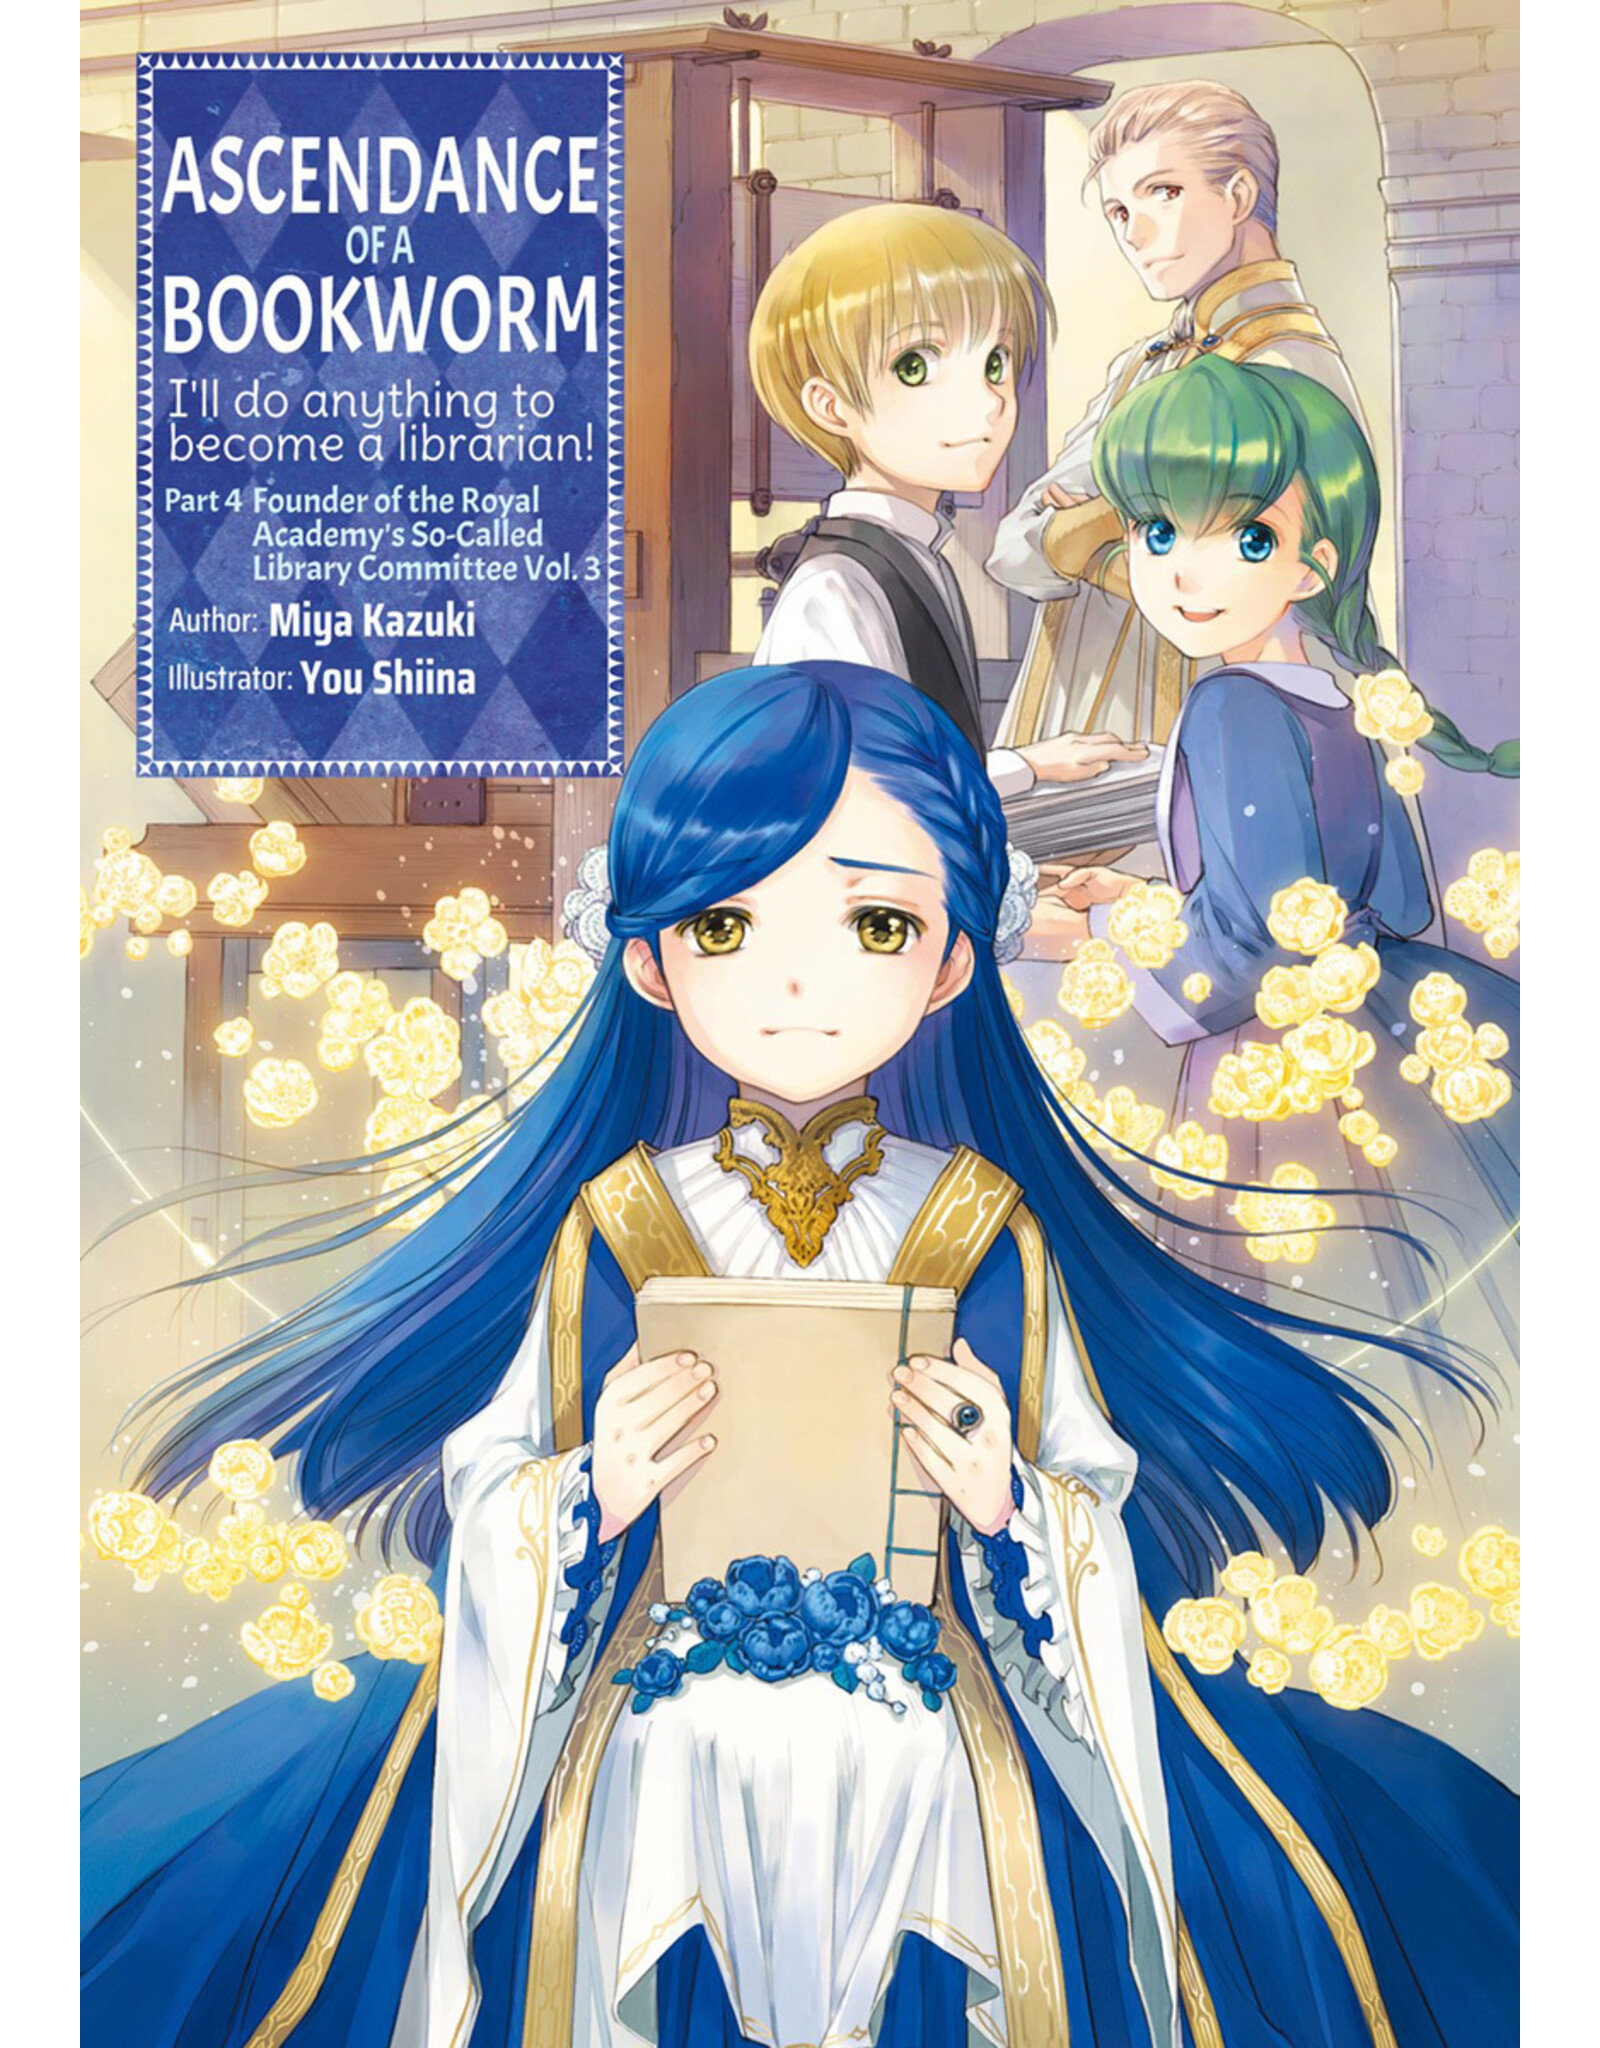 Ascendance of a Bookworm Part 4 Vol 3 Light Novel